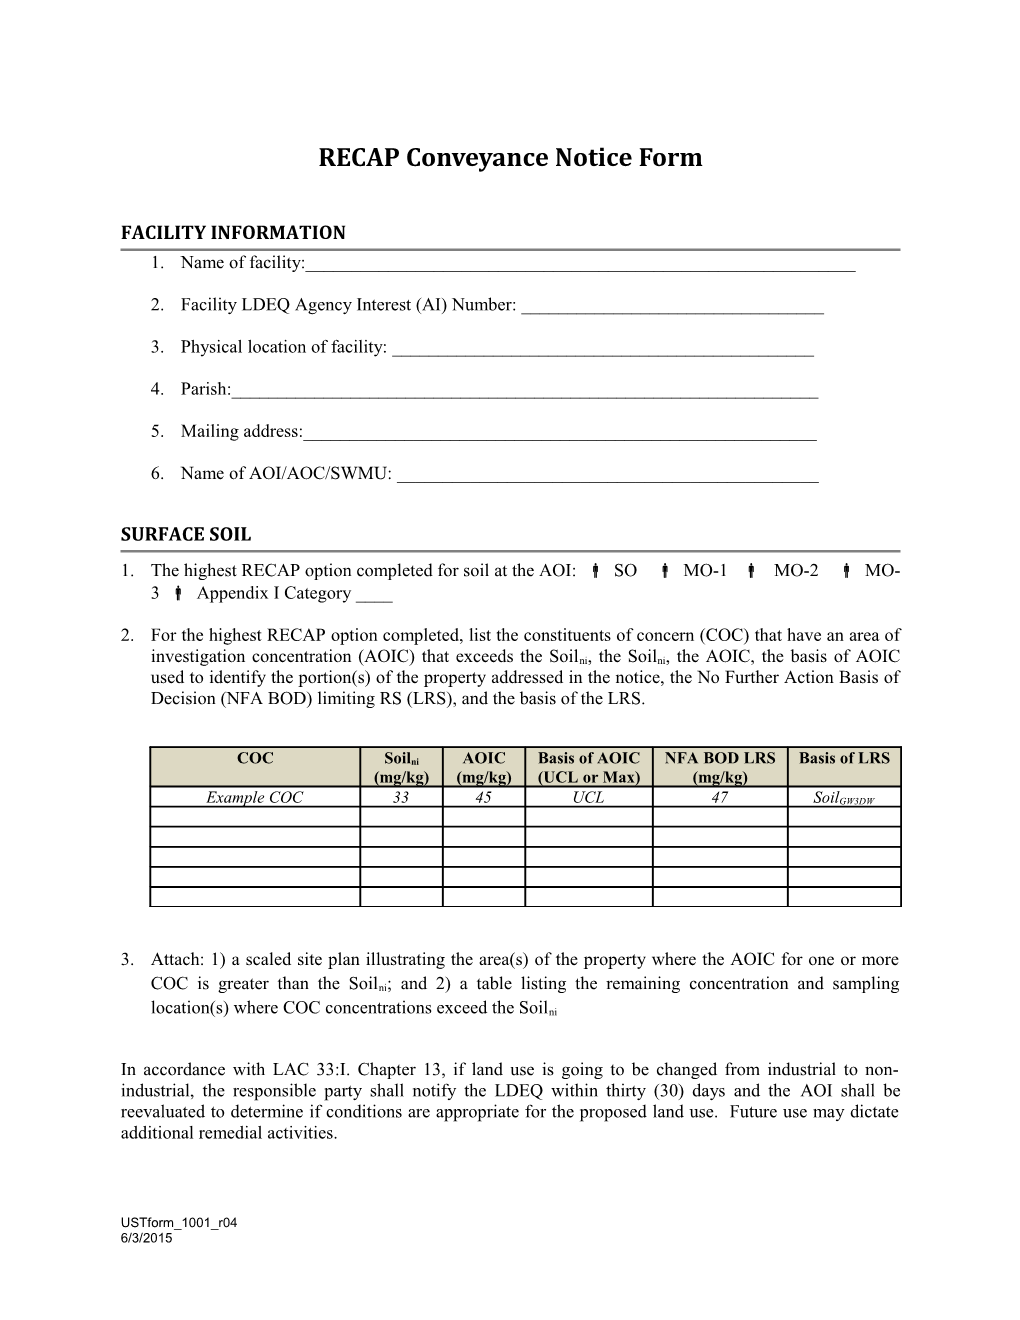 RECAP Conveyance Notice Form